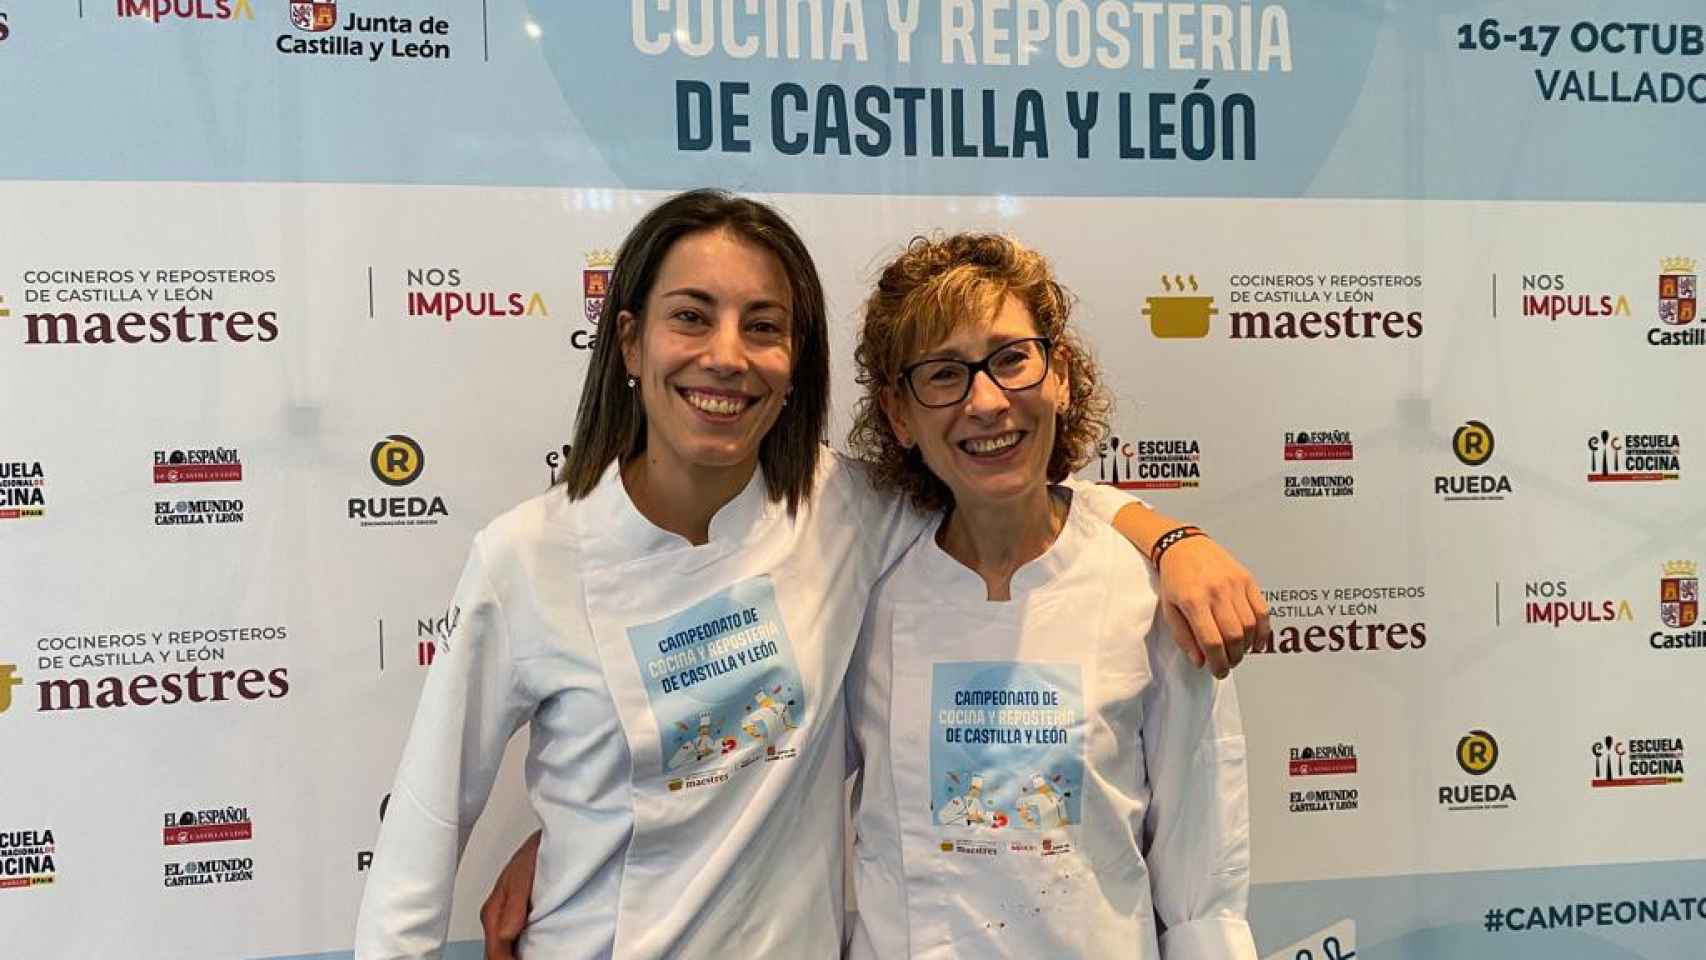 Sara Cámara Fernández y Begoña Río Gómez, ganadoras del campeonato de Cocina y Repostería de Castilla y León